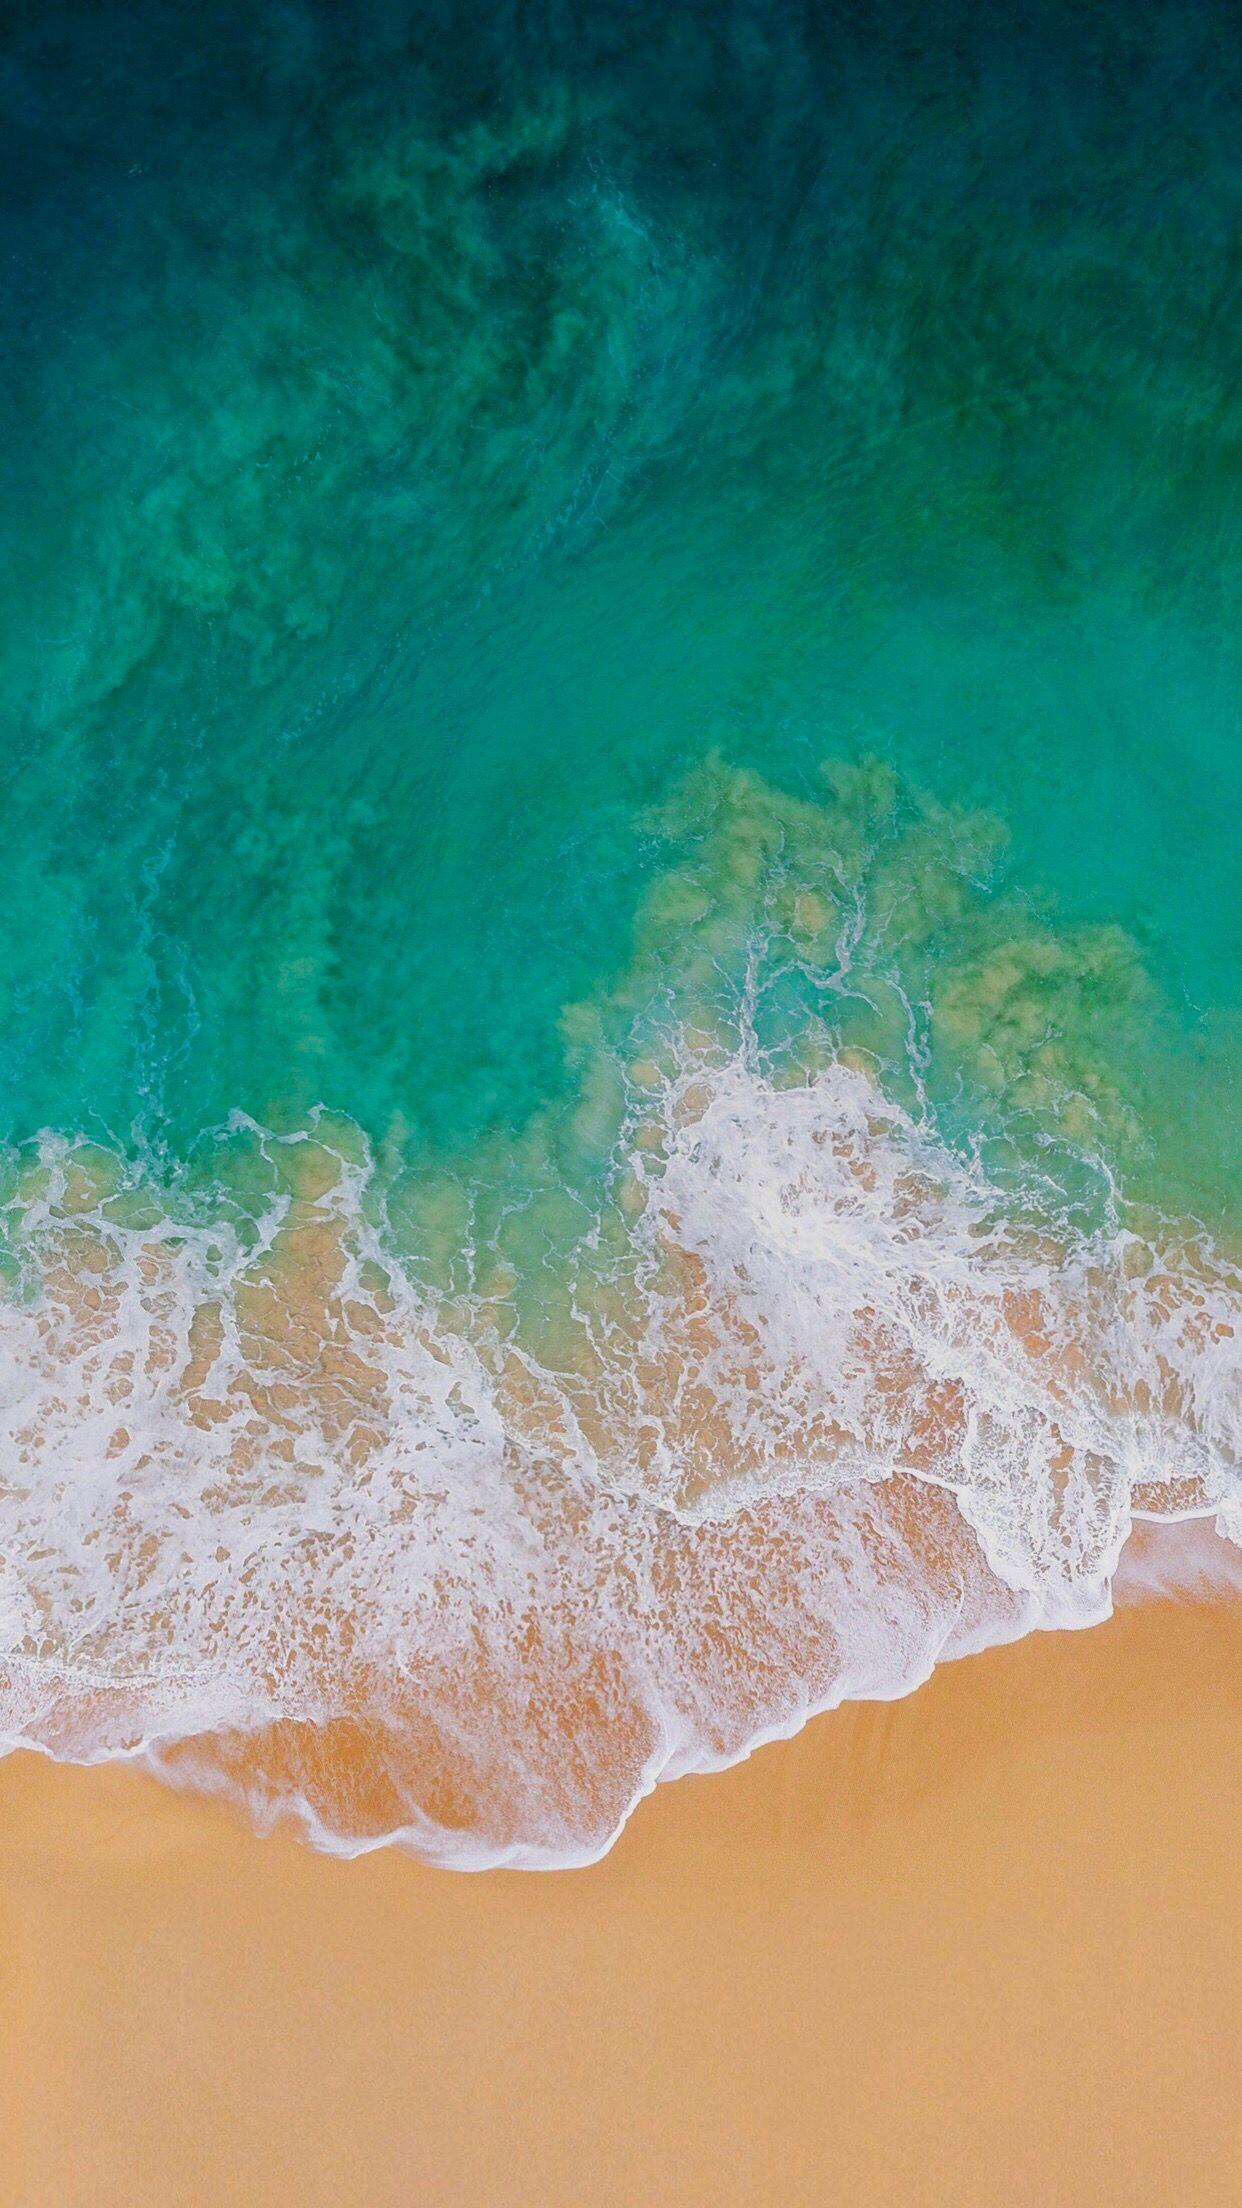 iOS Turquoise, sand, beach, ocean, abstract, apple